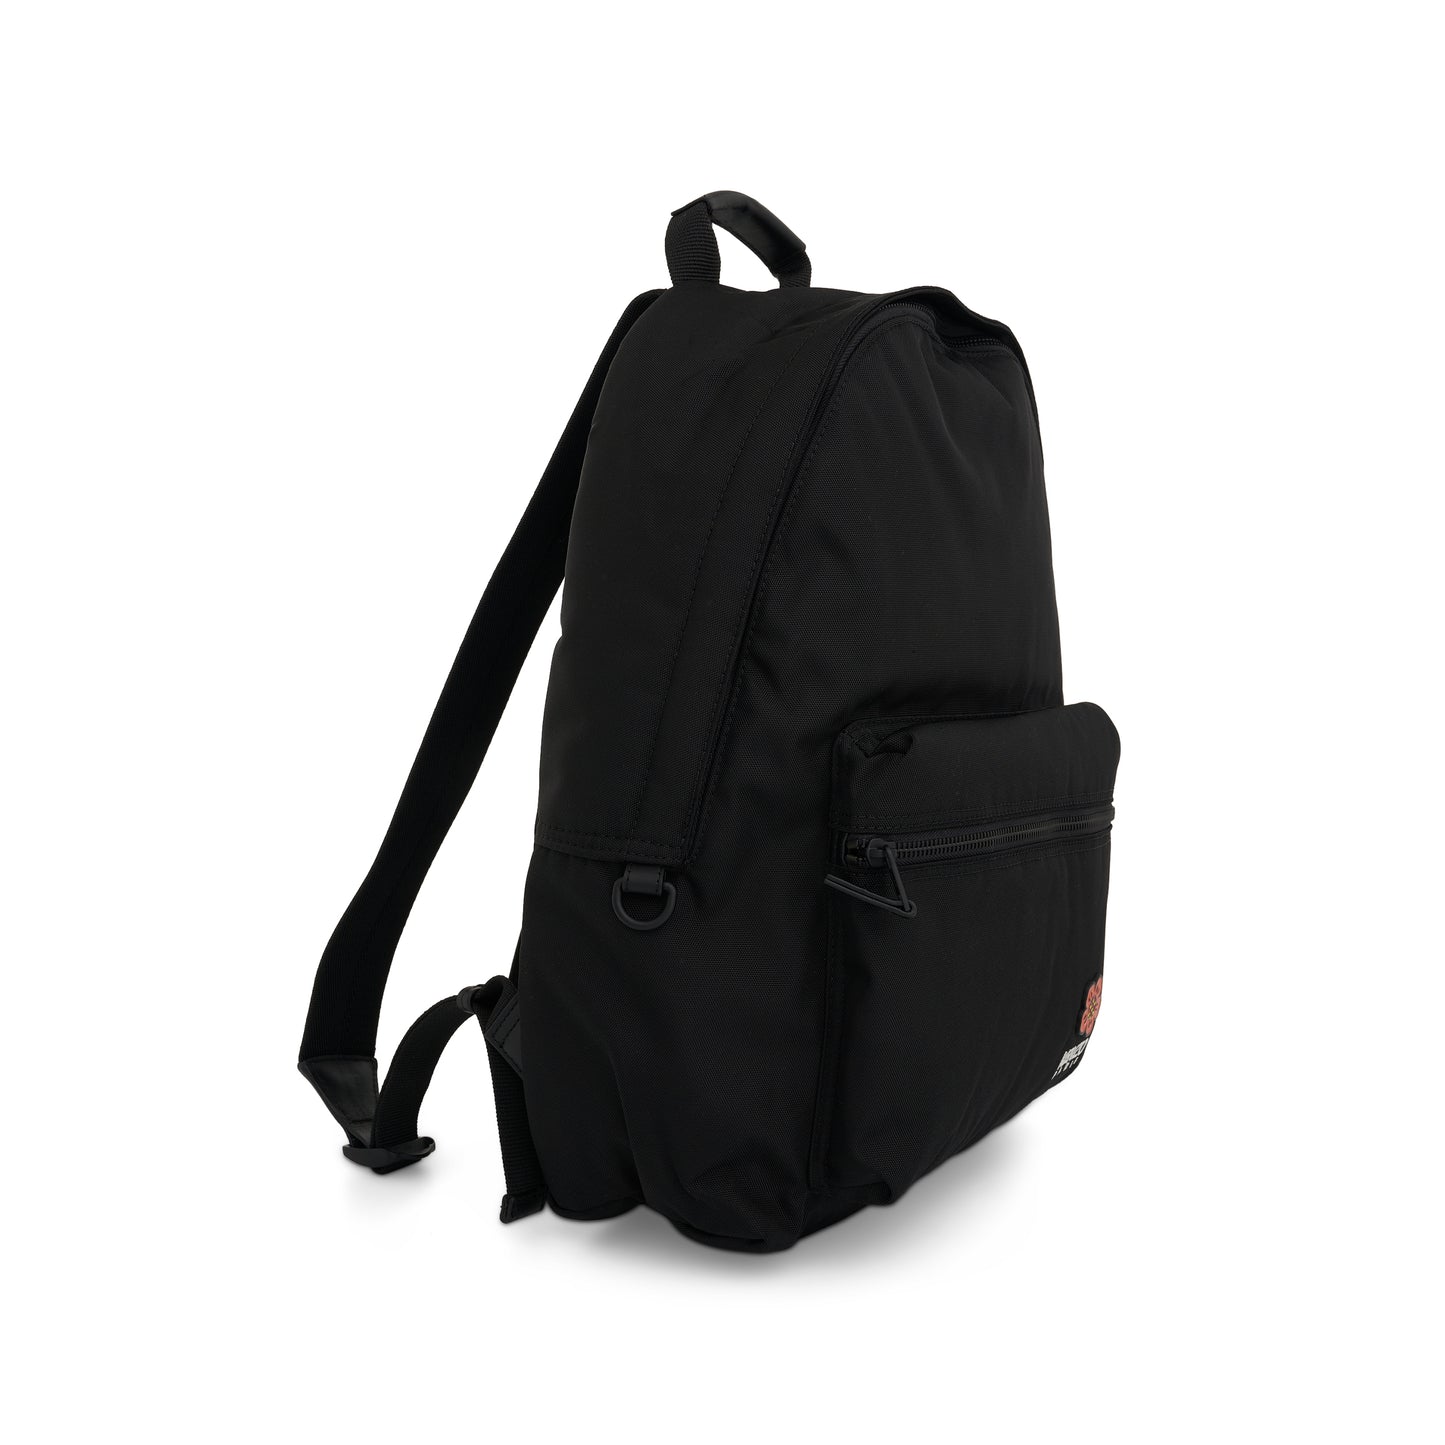 Crest Backpack in Black